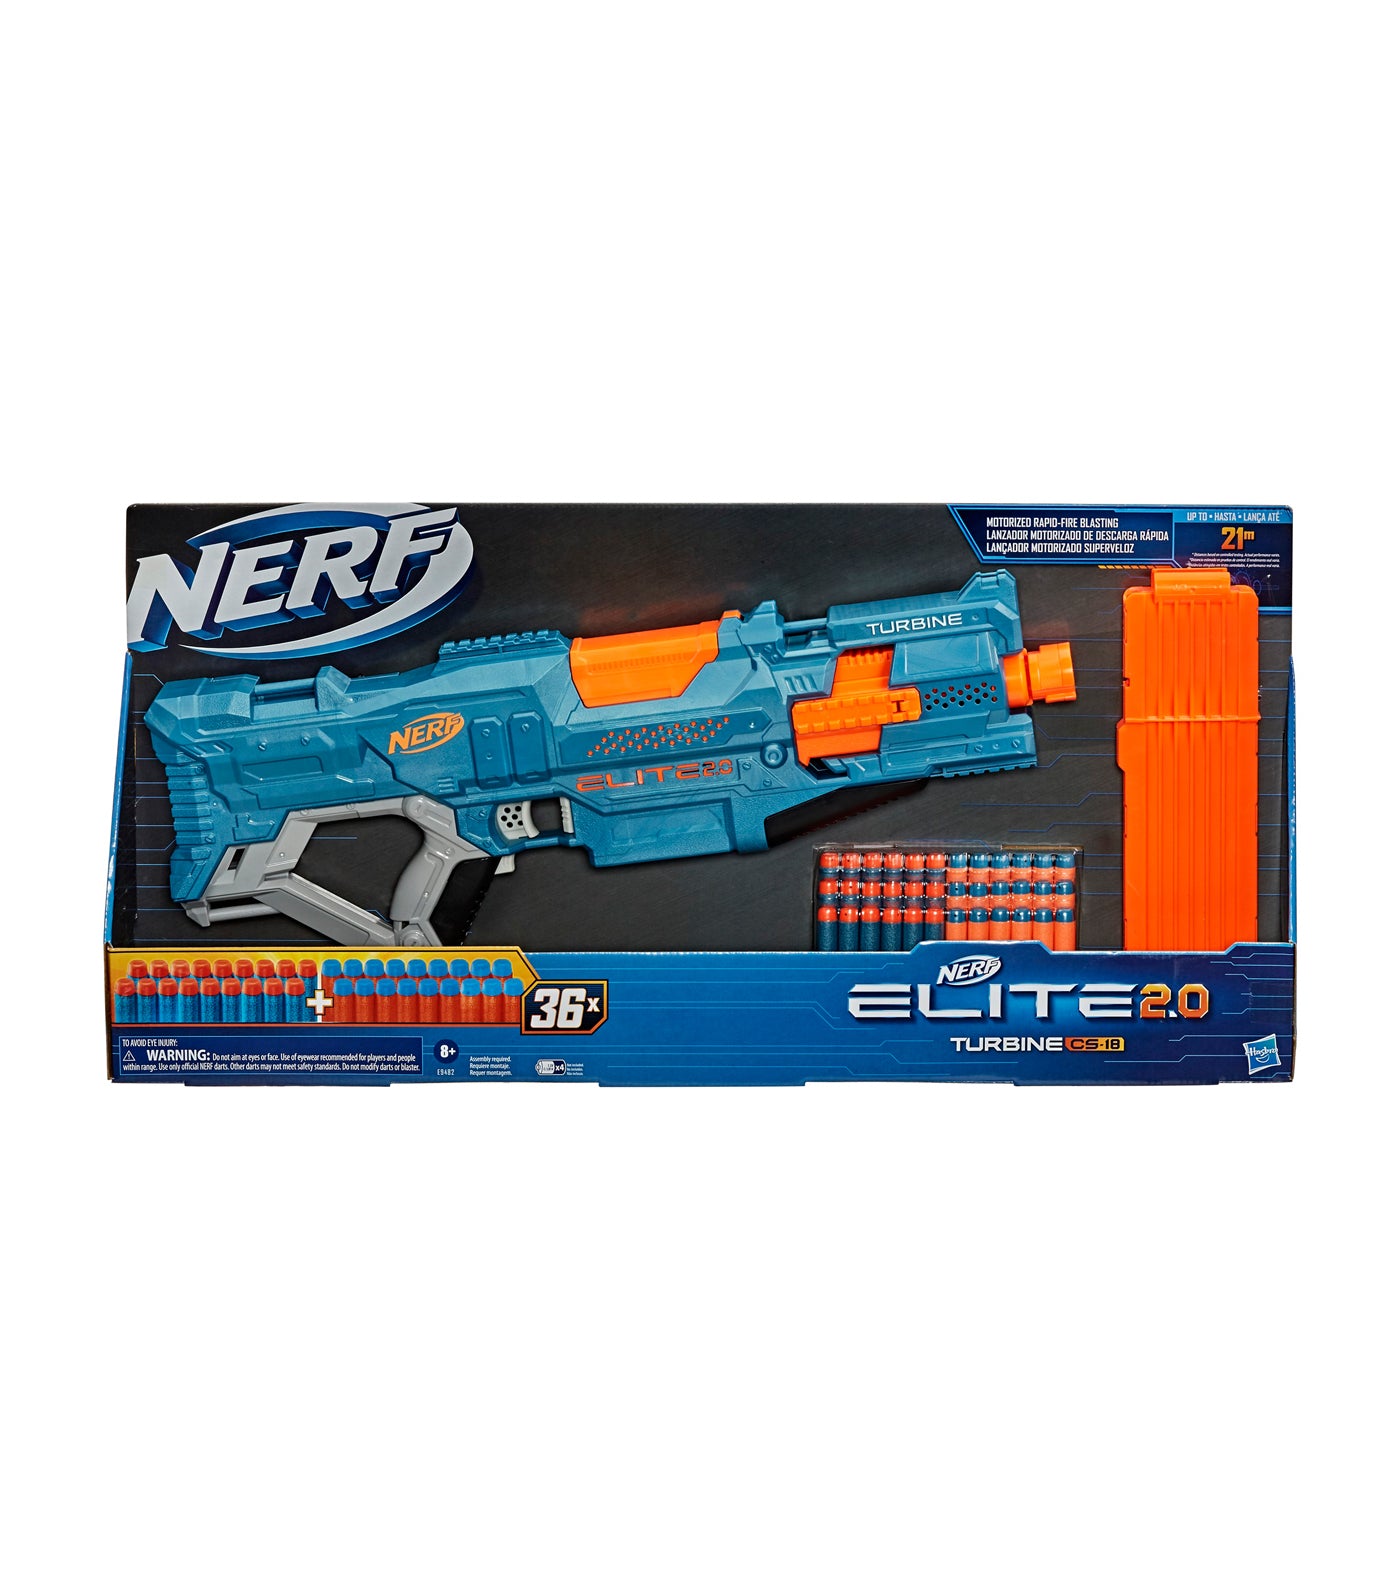 NERF Fortnite AR-E Blaster (E7659) for sale online